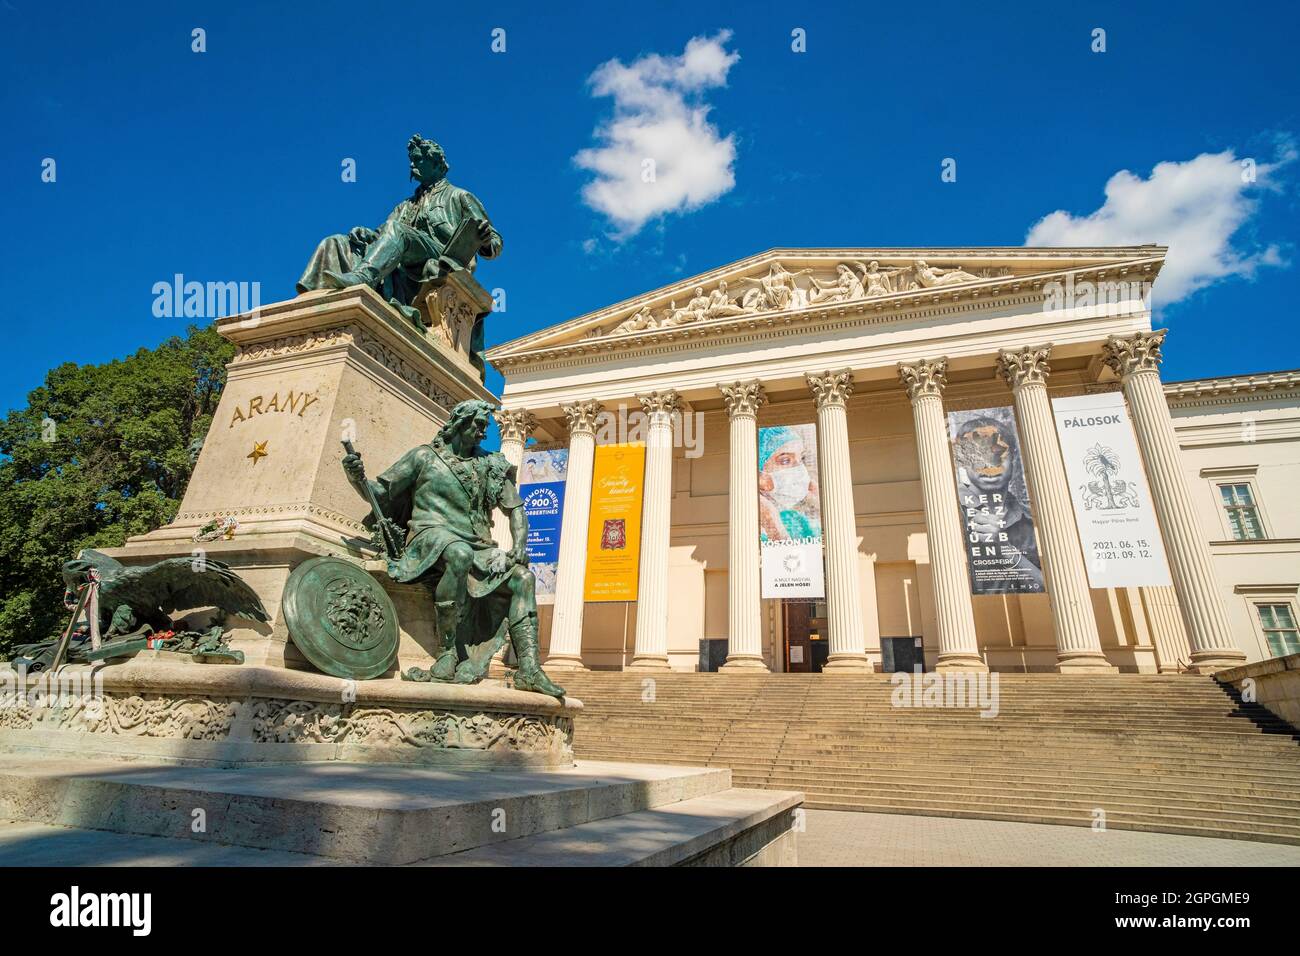 Hongrie, Budapest, classée au patrimoine mondial de l'UNESCO, quartier Pest, Musée national hongrois (Magyar Nemzeti Muzeum), statue d'Arany János, grand poète hongrois du XIXe siècle Banque D'Images